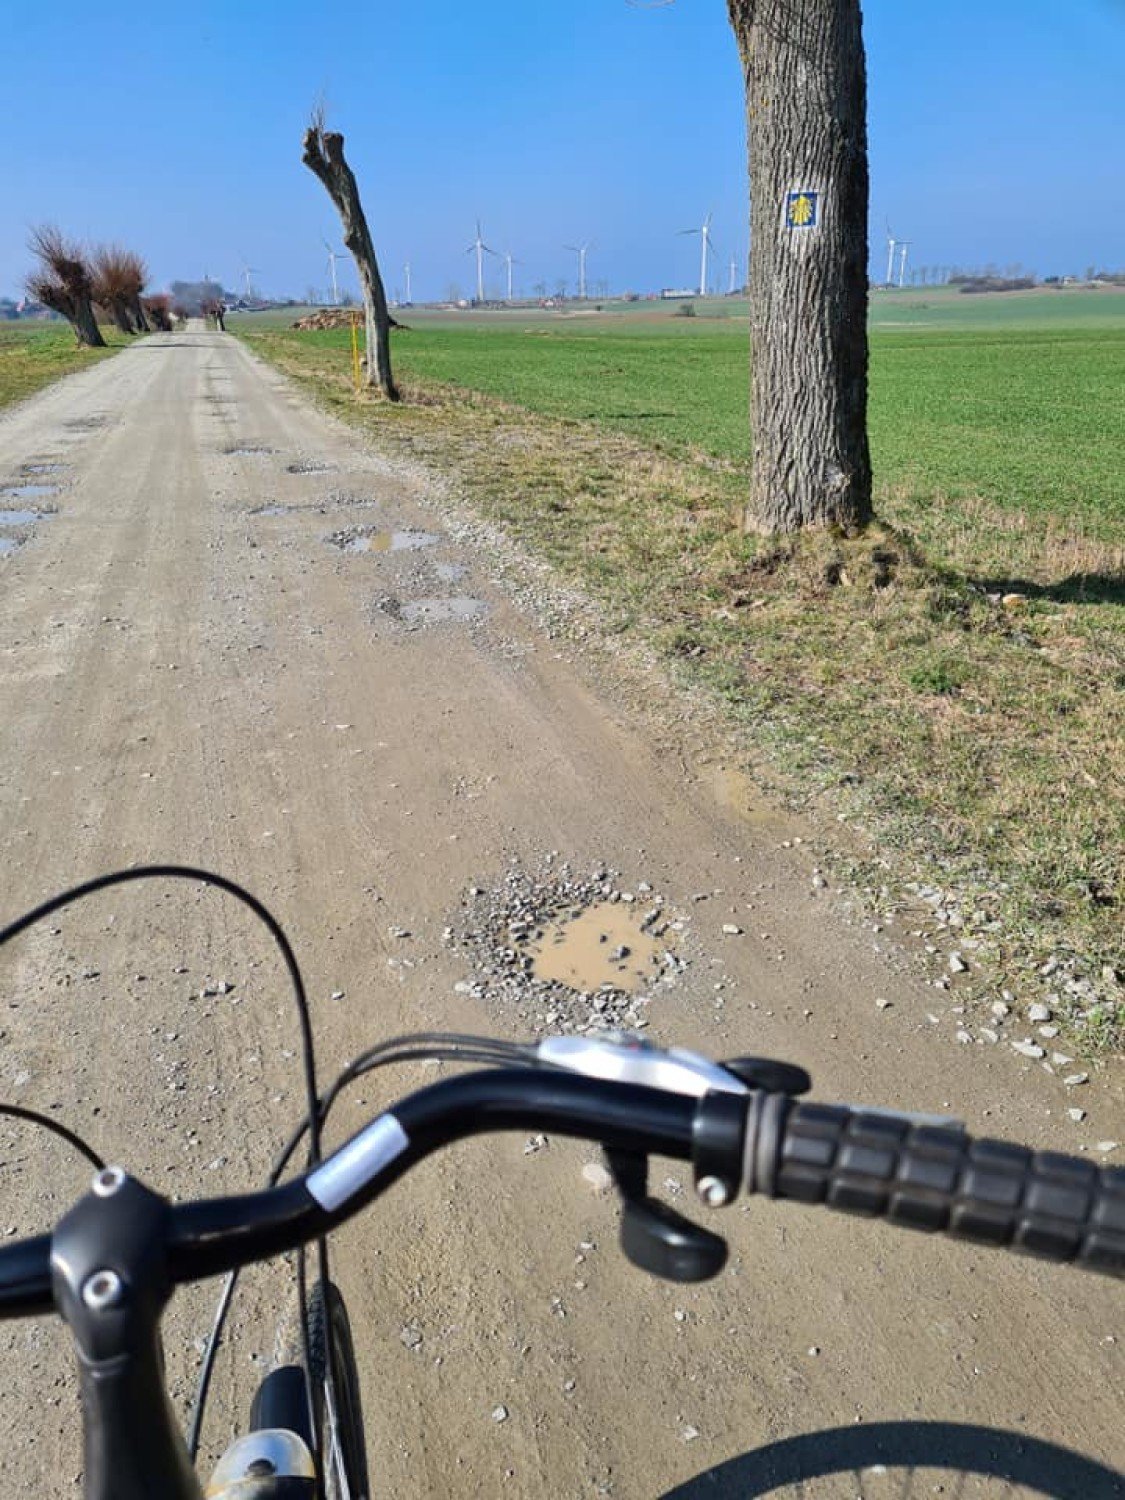 Nad Bałtykiem w gminie Darłowo fajna trasa rowerowa na majówkę. Zdjęcia